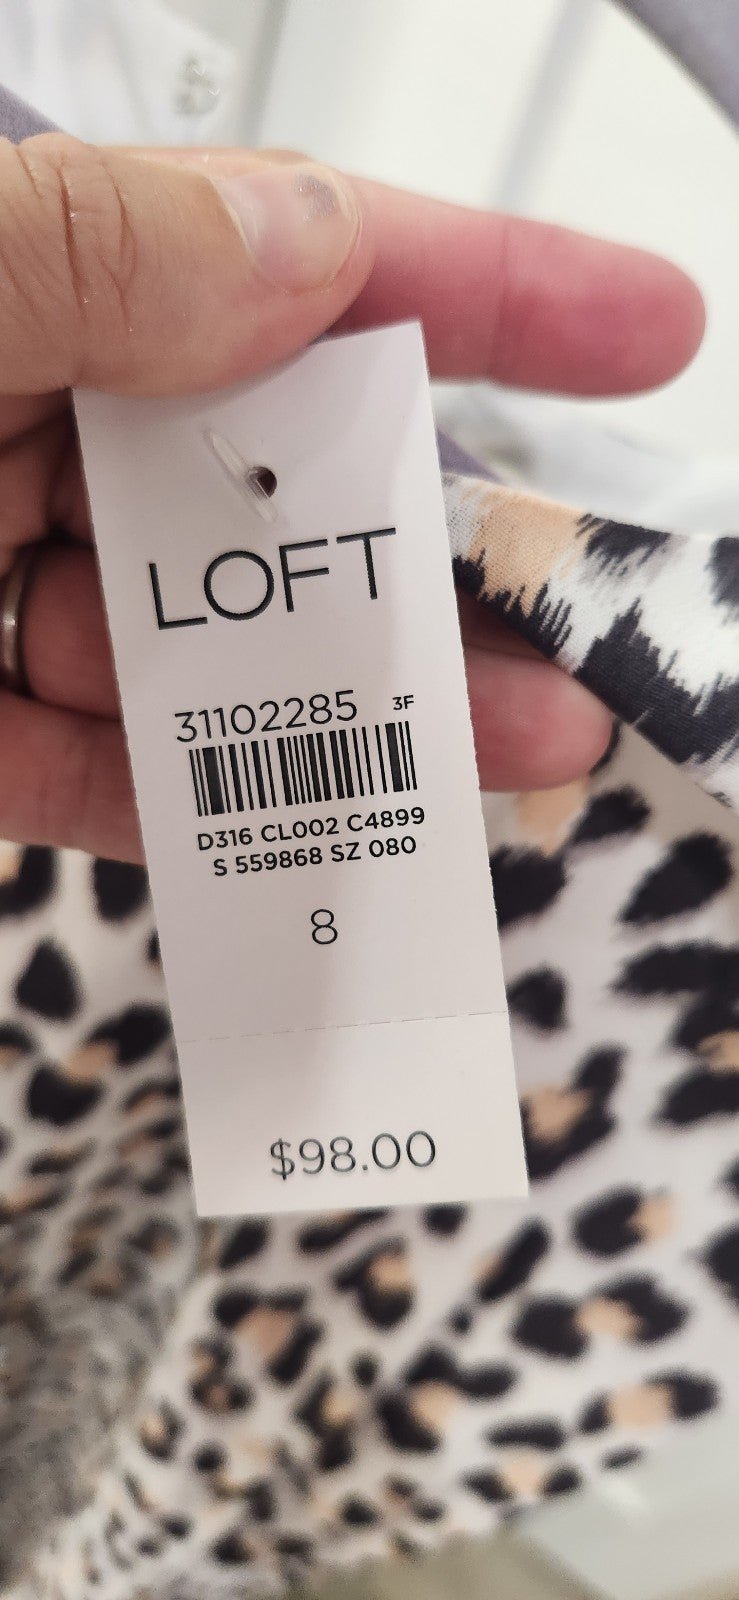 the Lowest price Loft Leopard Dress size 8 KAgtYrefz no tax